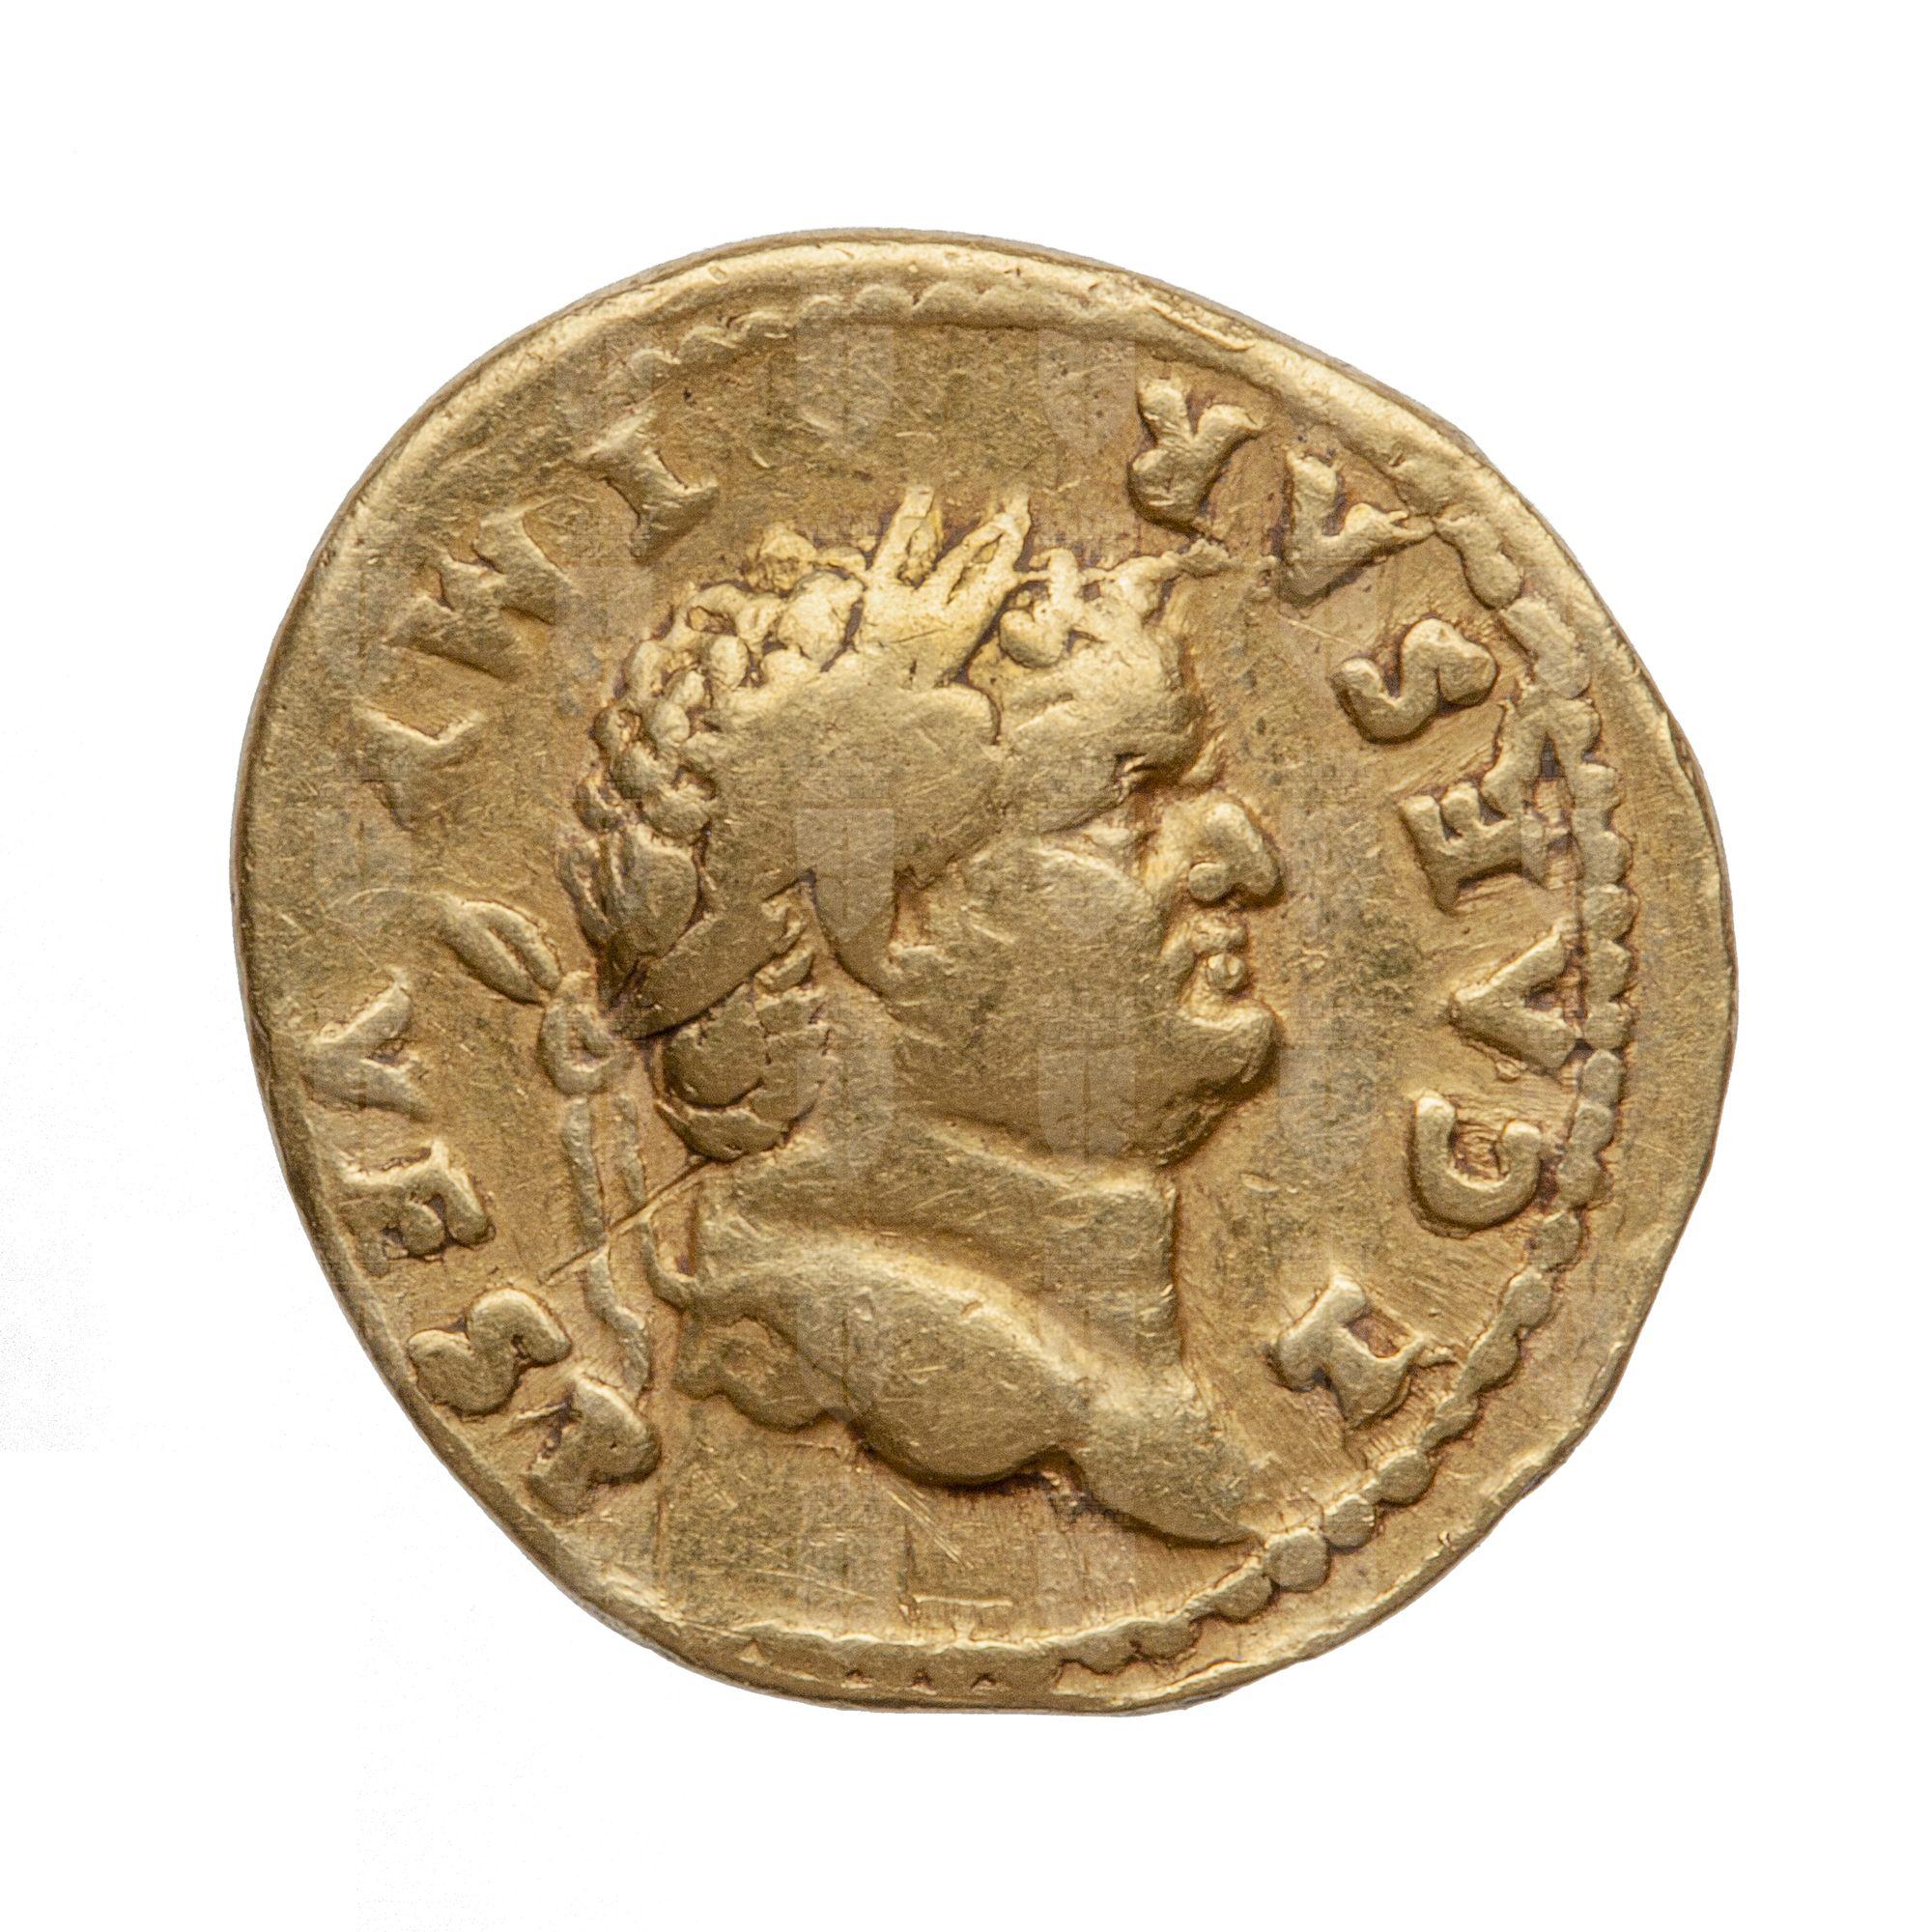 https://catalogomusei.comune.trieste.it/samira/resource/image/reperti-archeologici/Roma 760 D Tito.jpg?token=65e6c51b007b8